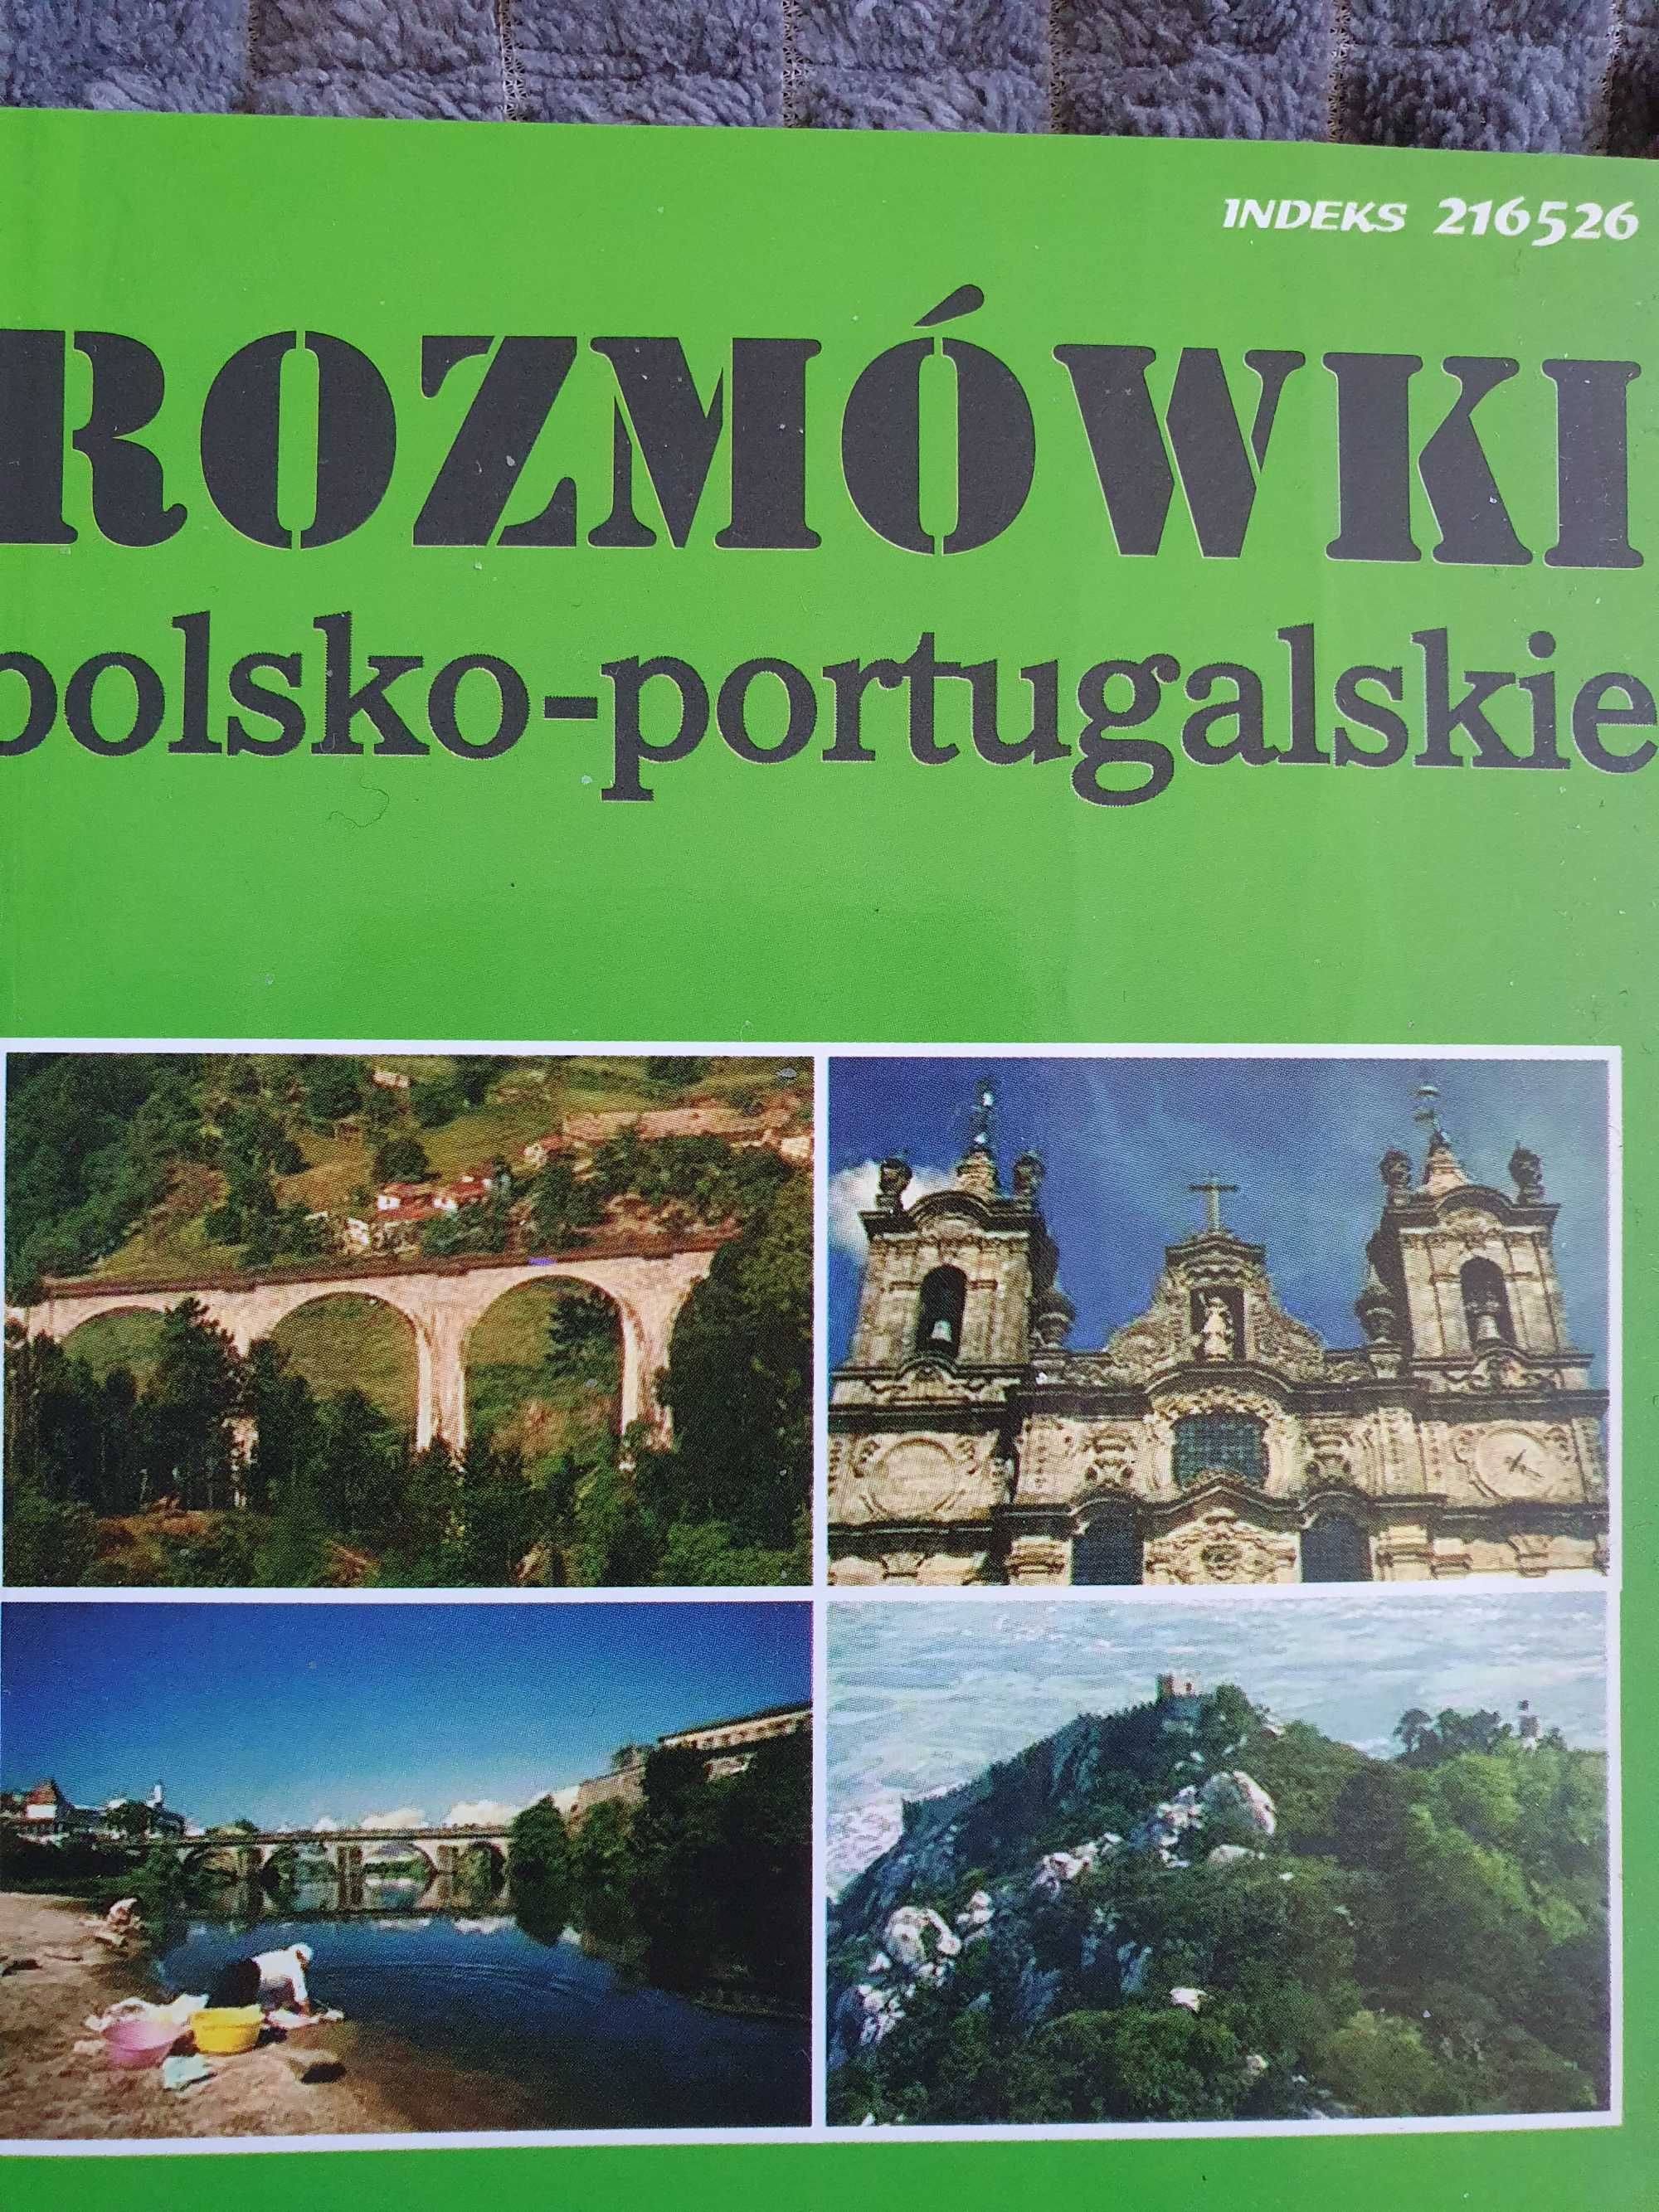 Kieszonkowy slownik Rozmowki polsko-portugalskie